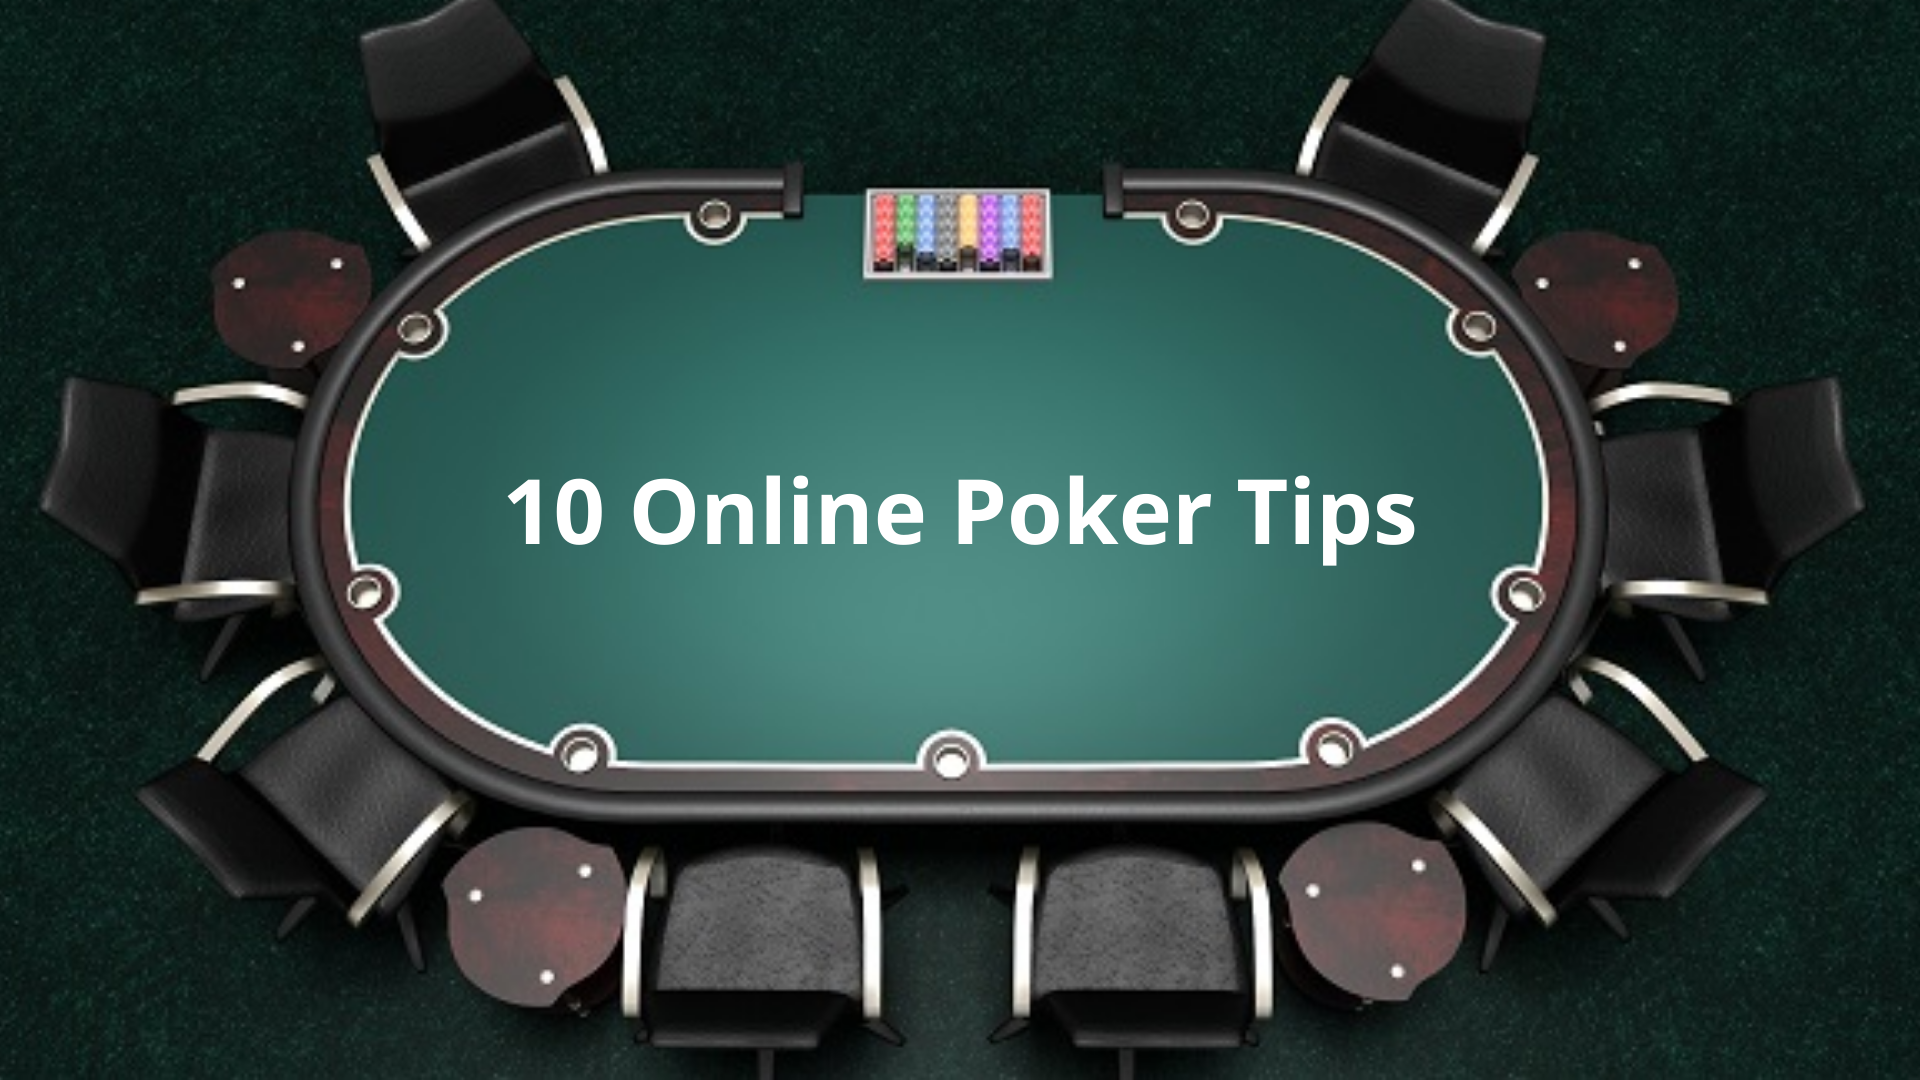 public/uploads/2021/03/10-online-poker-tips.png